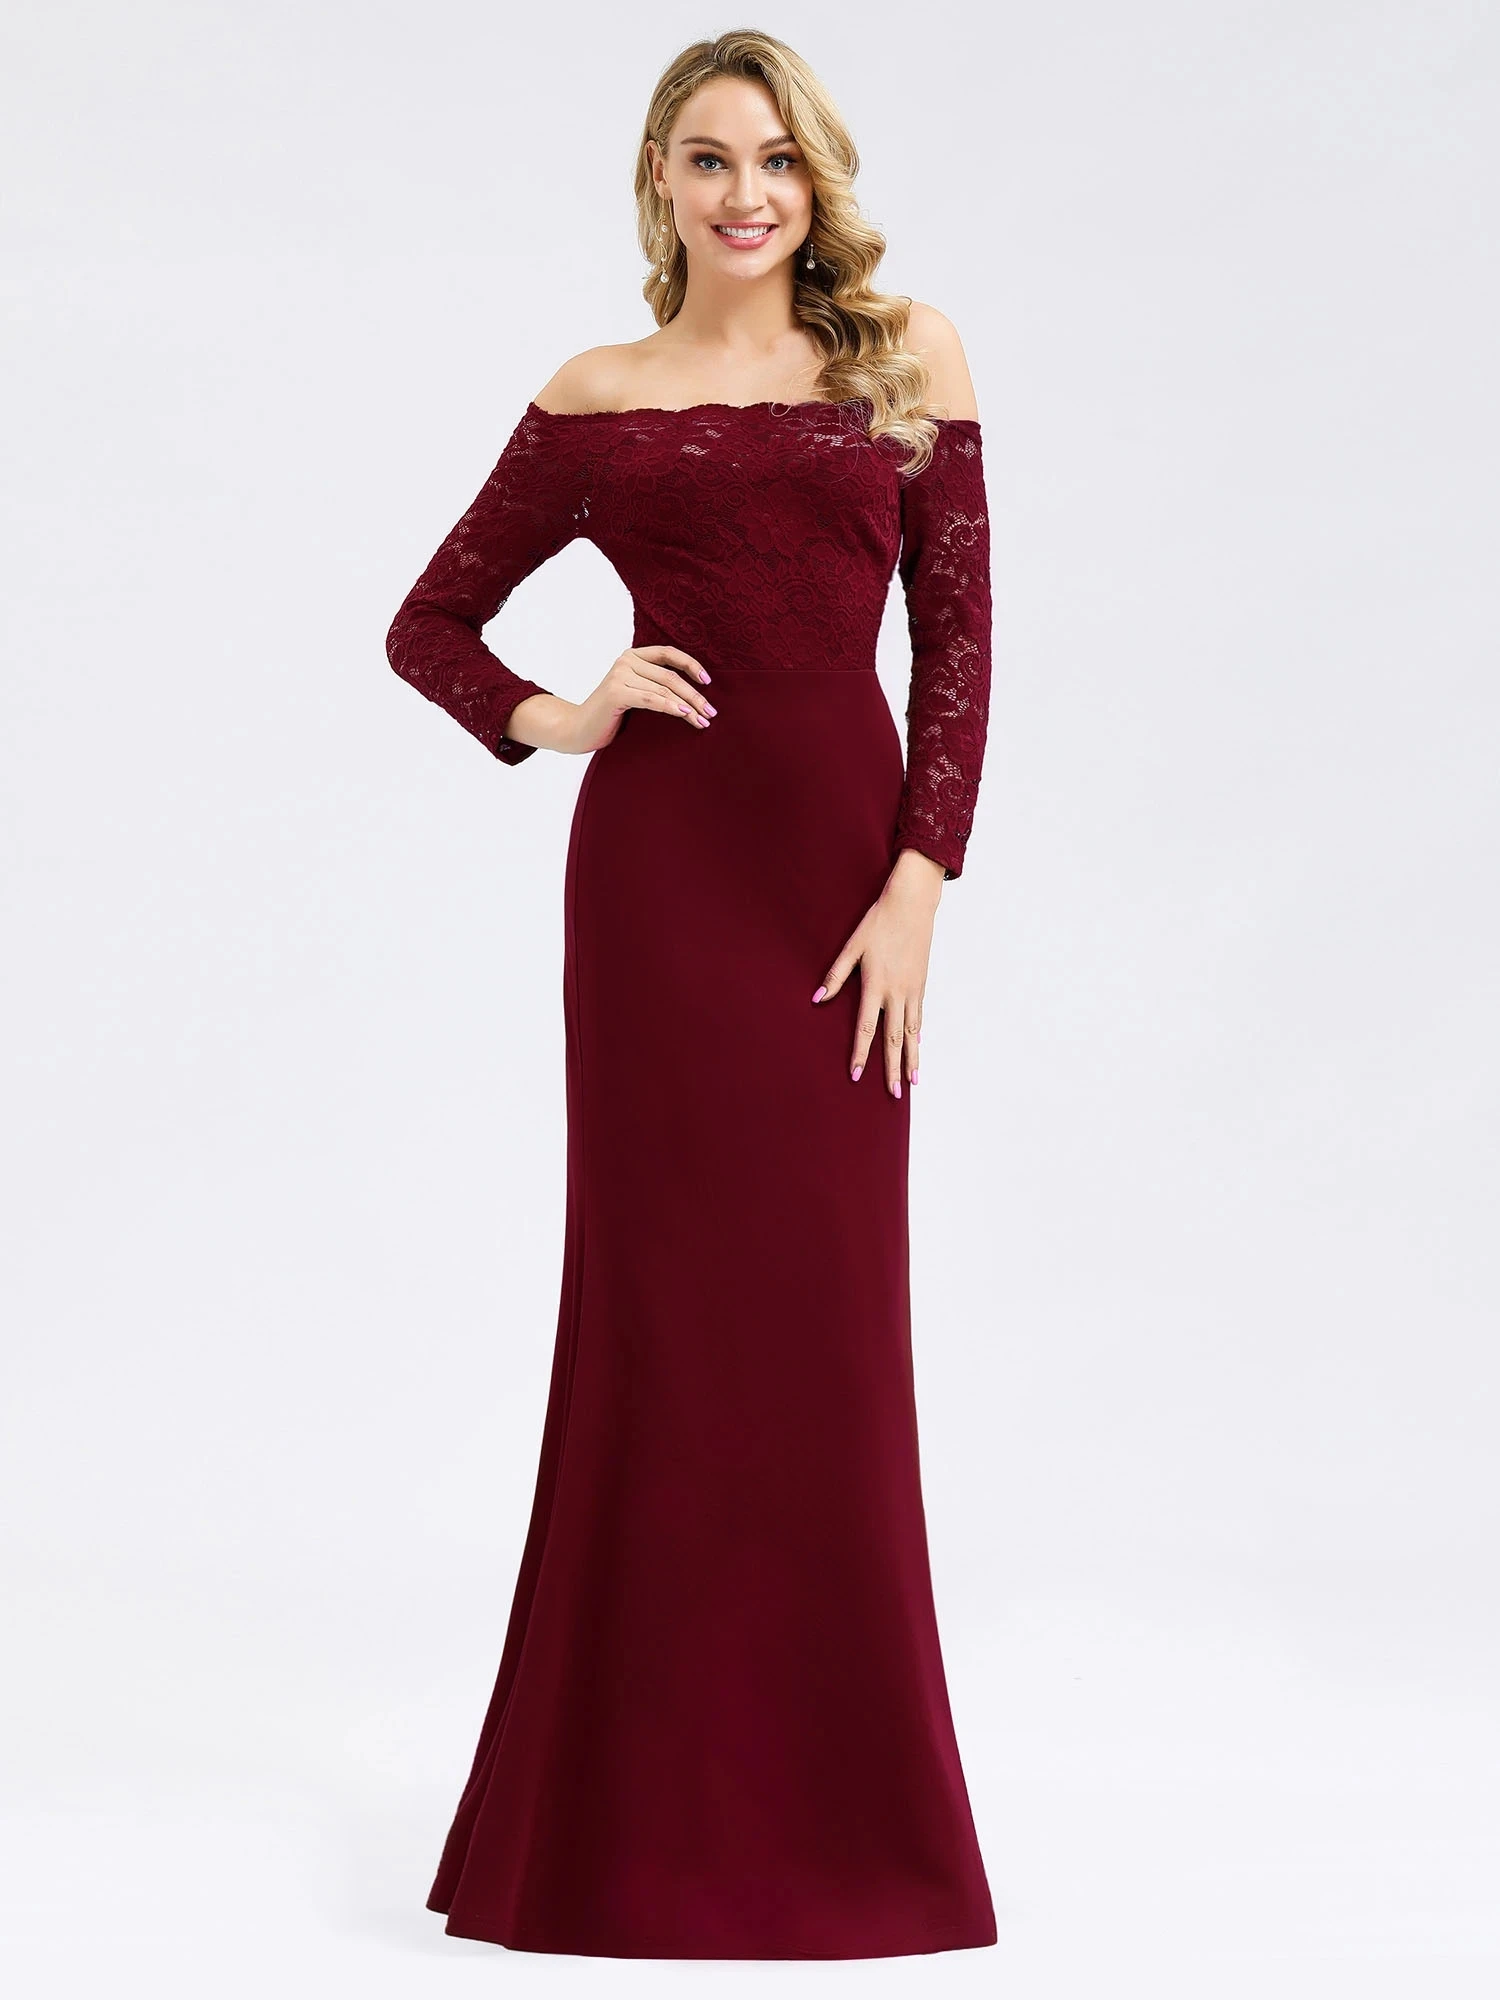 

Женское вечернее платье-Русалка Ever Pretty, элегантное платье с открытыми плечами и кружевными рукавами, для торжества